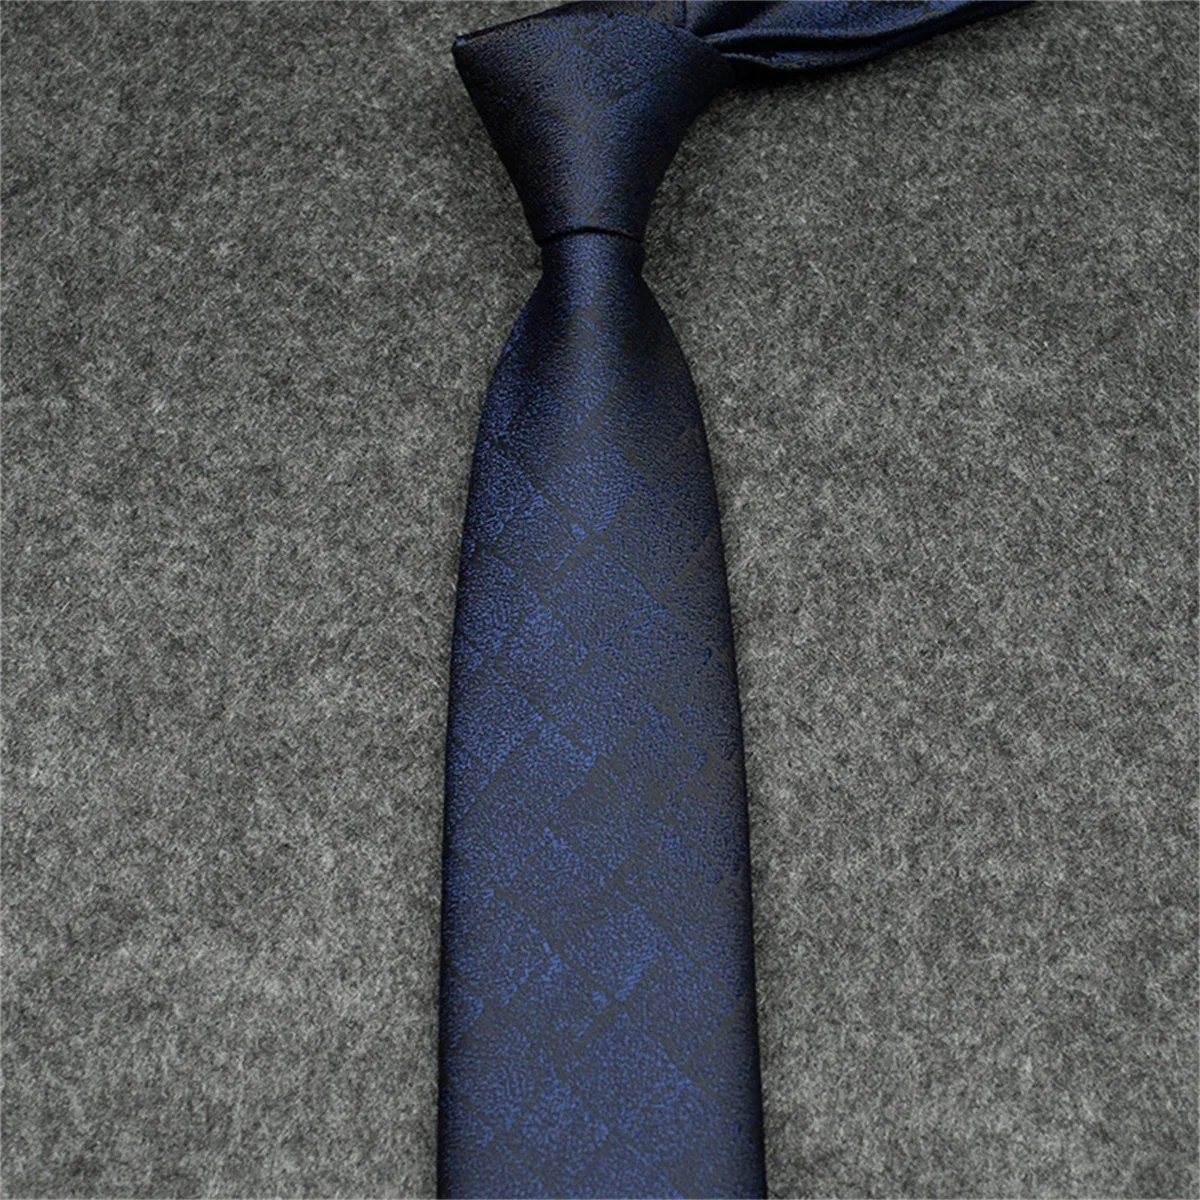 NOWOŚĆ ZESPÓŁ PROJEKTACJA SILKI SHITIE BLAKE BLUL BLUE Jacquard Ręka tkana dla mężczyzn dla mężczyzn ślubny i biznesowy krawat Masowy pudełko 12355